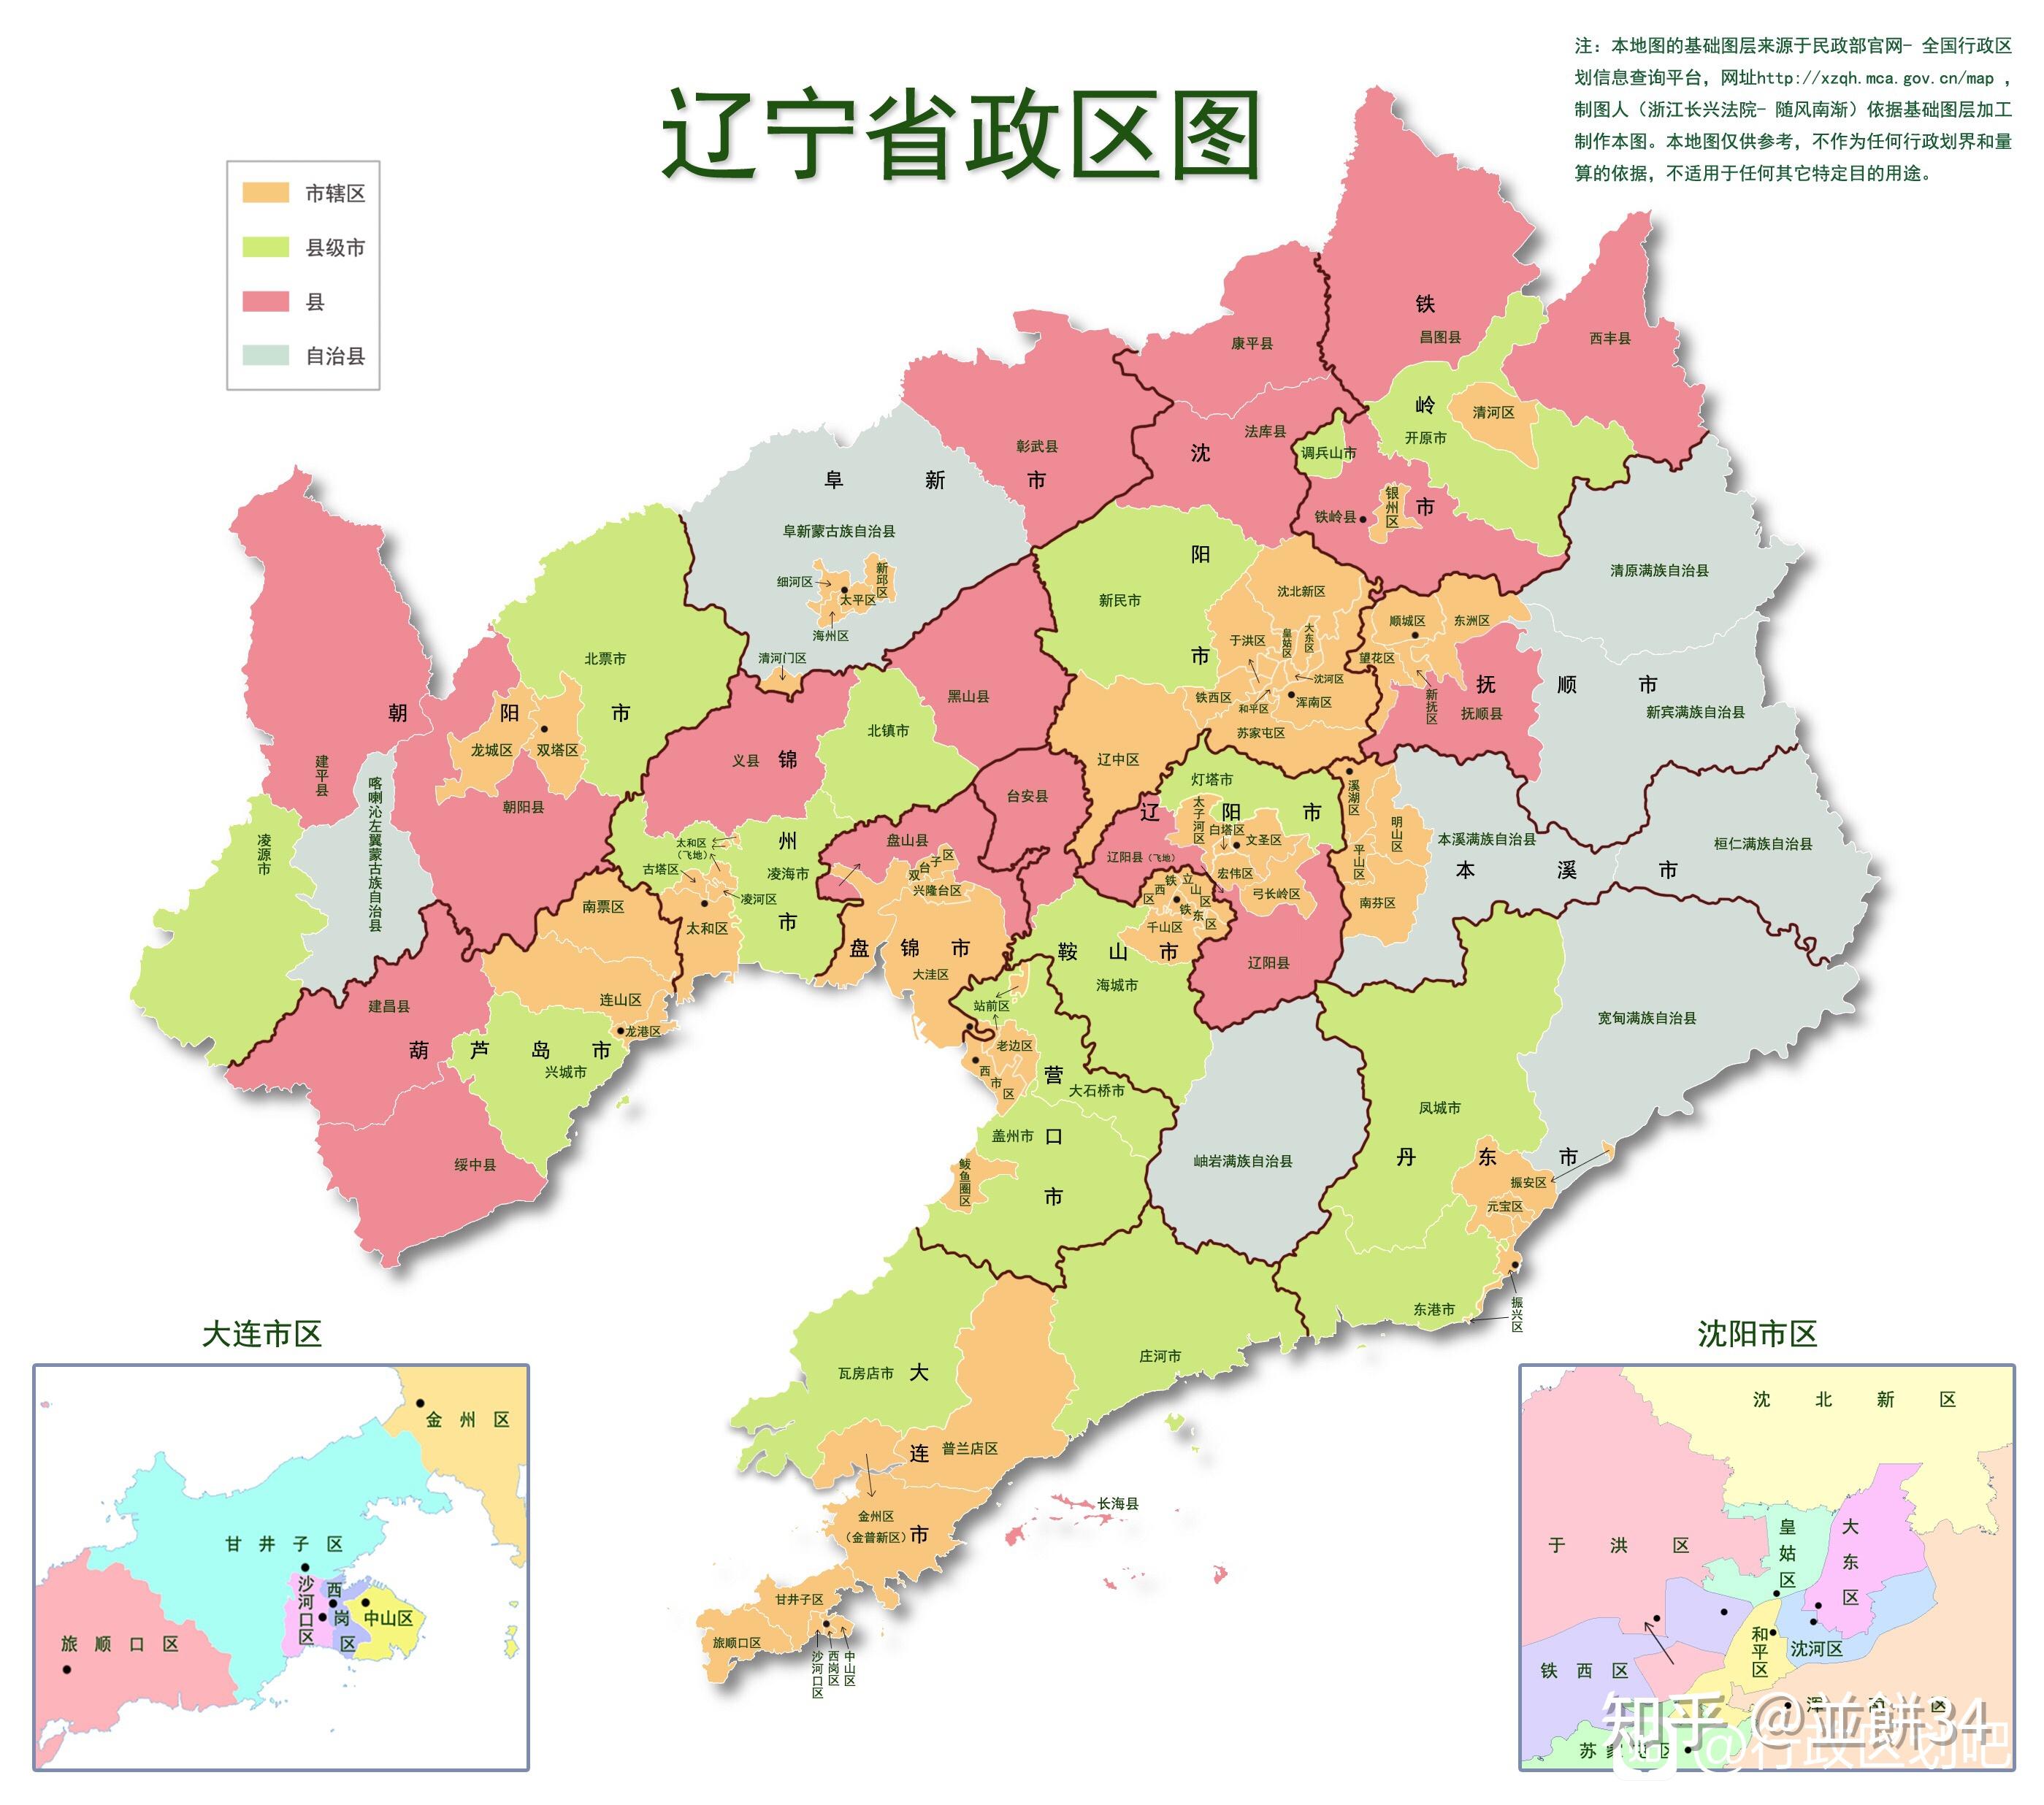 方舆 - 经济地理 - 建平县规划（2011-2030） - Powered by phpwind